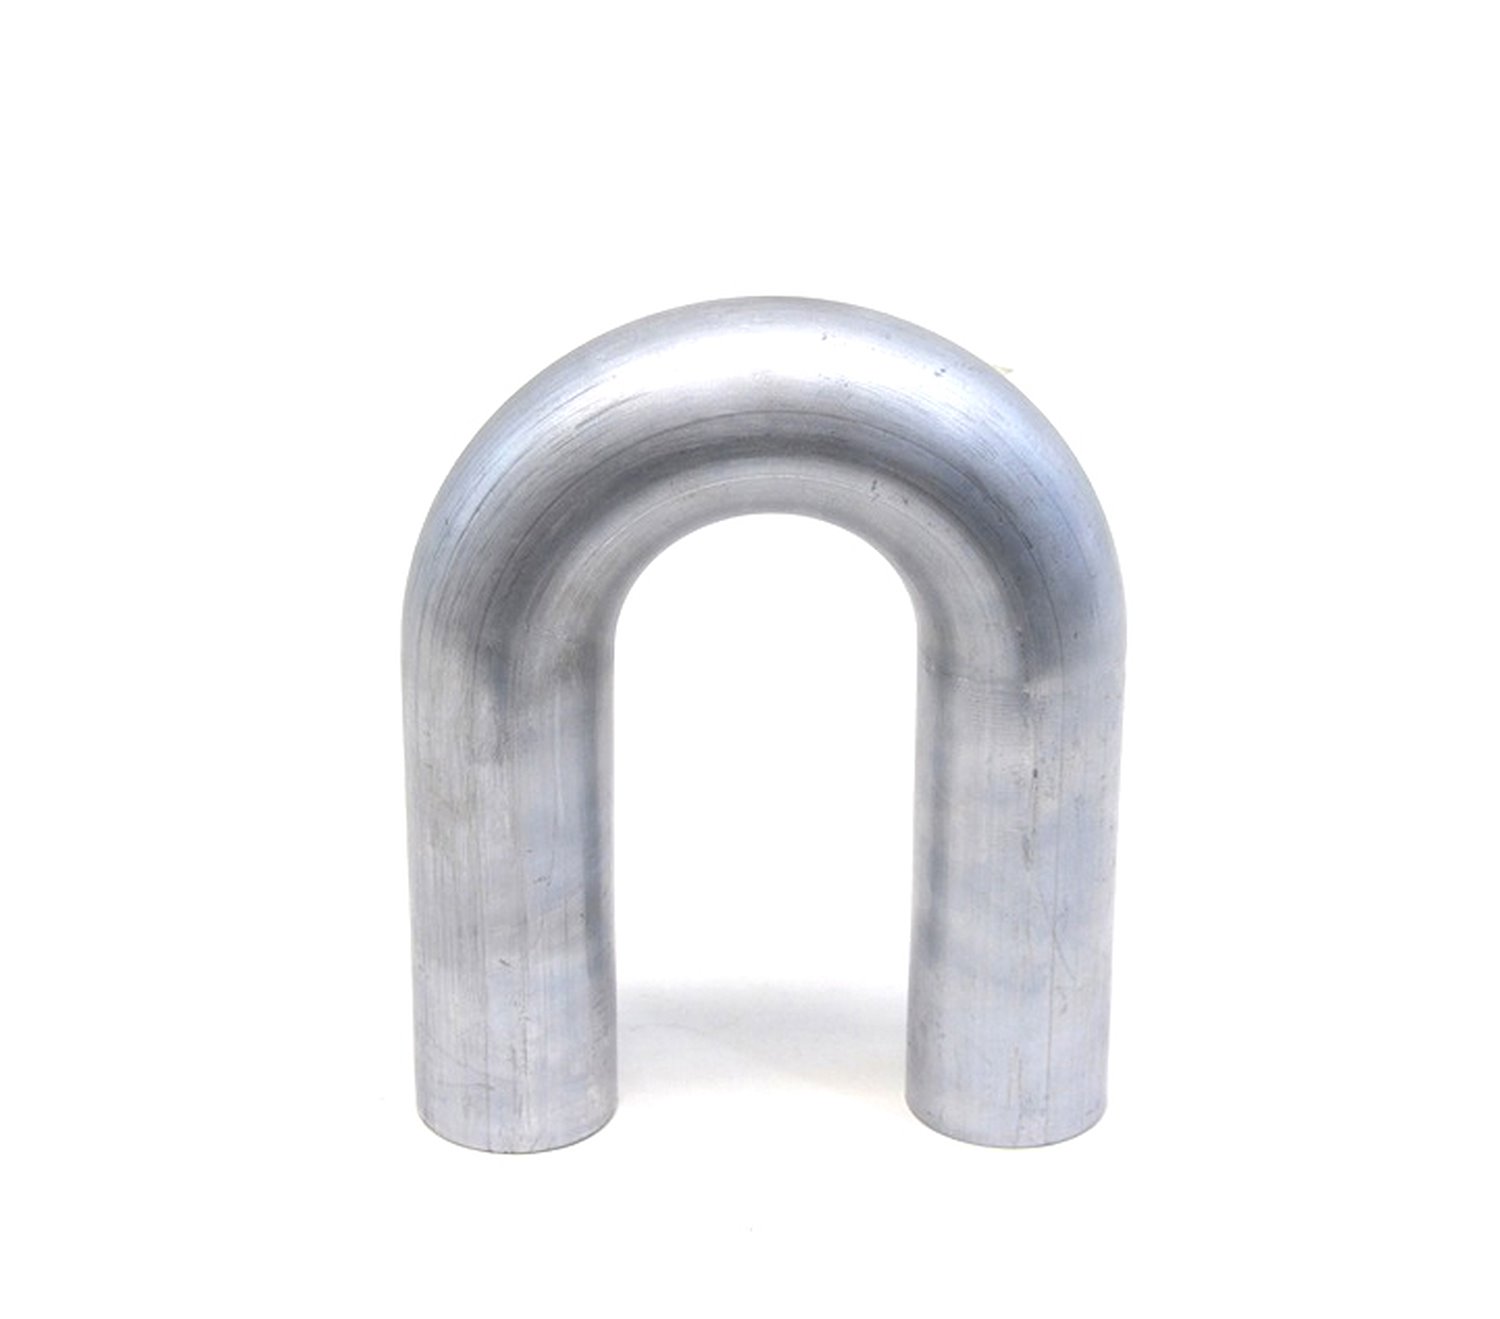 AT180-275-CLR-35 Aluminum Elbow Tube, 6061 Aluminum, 180-Degree U Bend Elbow Tubing, 2-3/4 in. OD, Tight Radius, 3-1/2 in. CLR